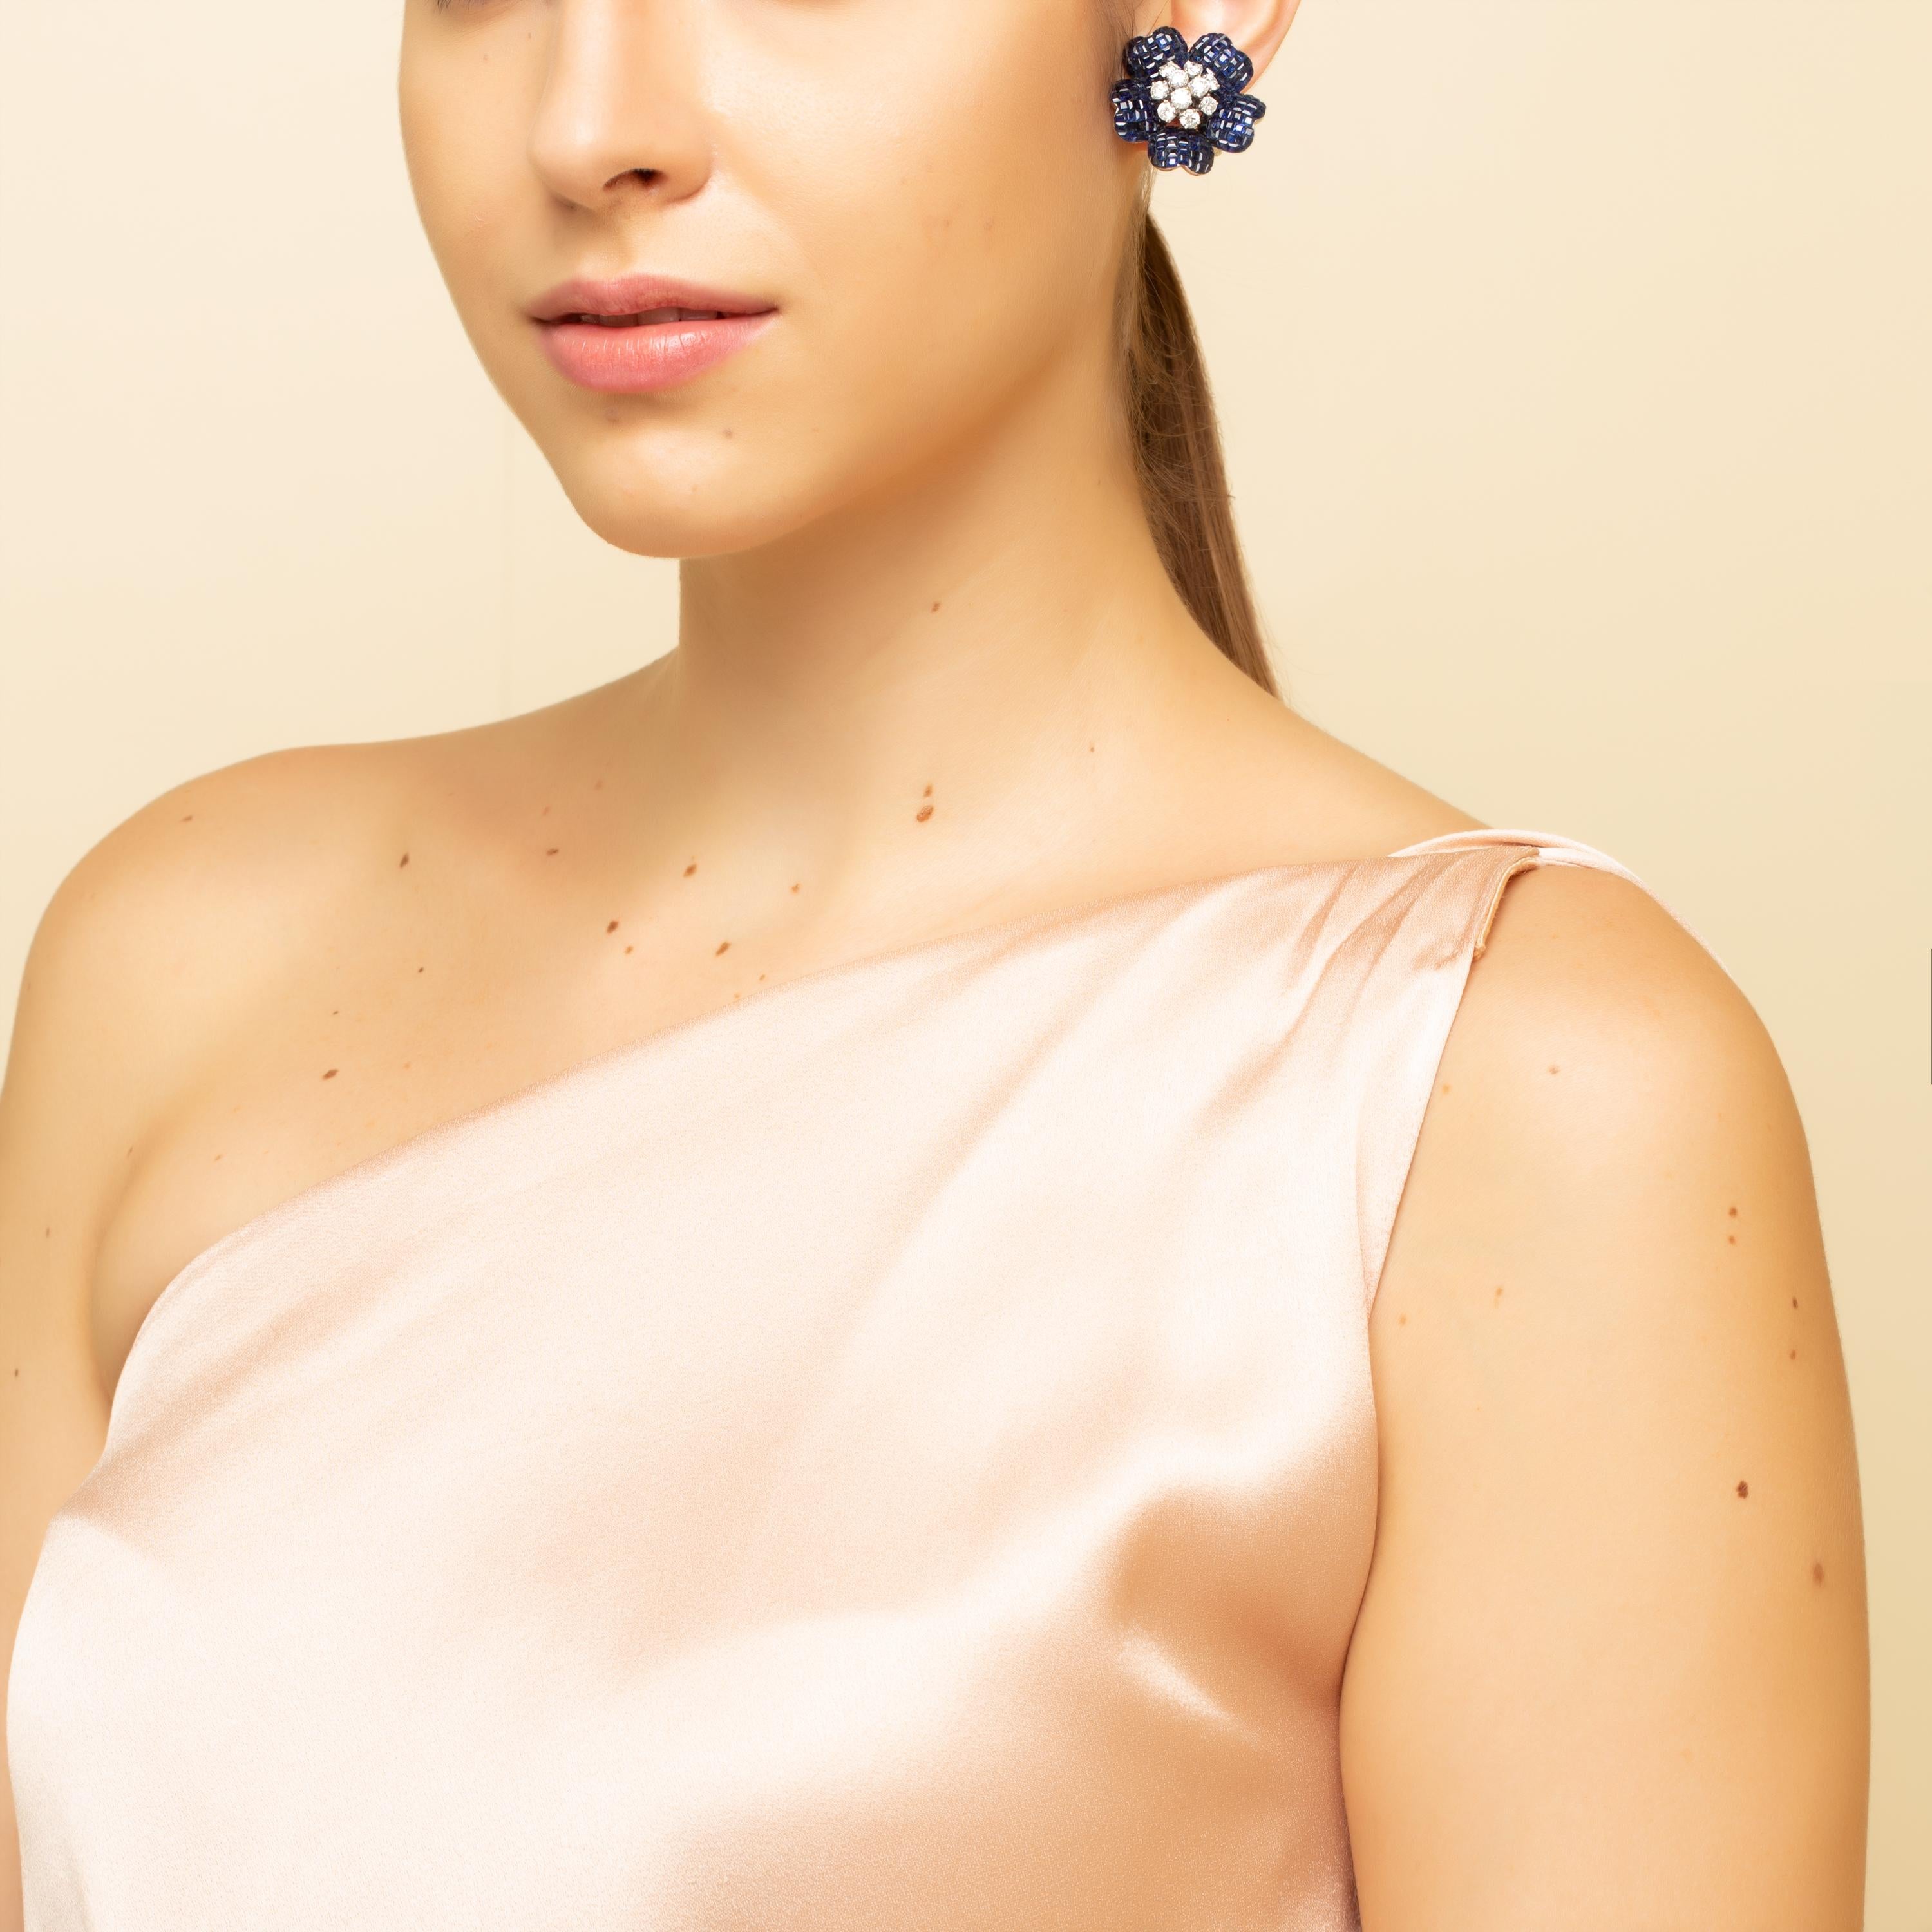 Boucles d'oreilles fleur de hibiscus en saphir bleu 

26,25 carats de saphirs bleus sertis invisibles et 3,18 carats de diamants sertis dans de l'or 14kt.  

Livraison gratuite dans le monde entier